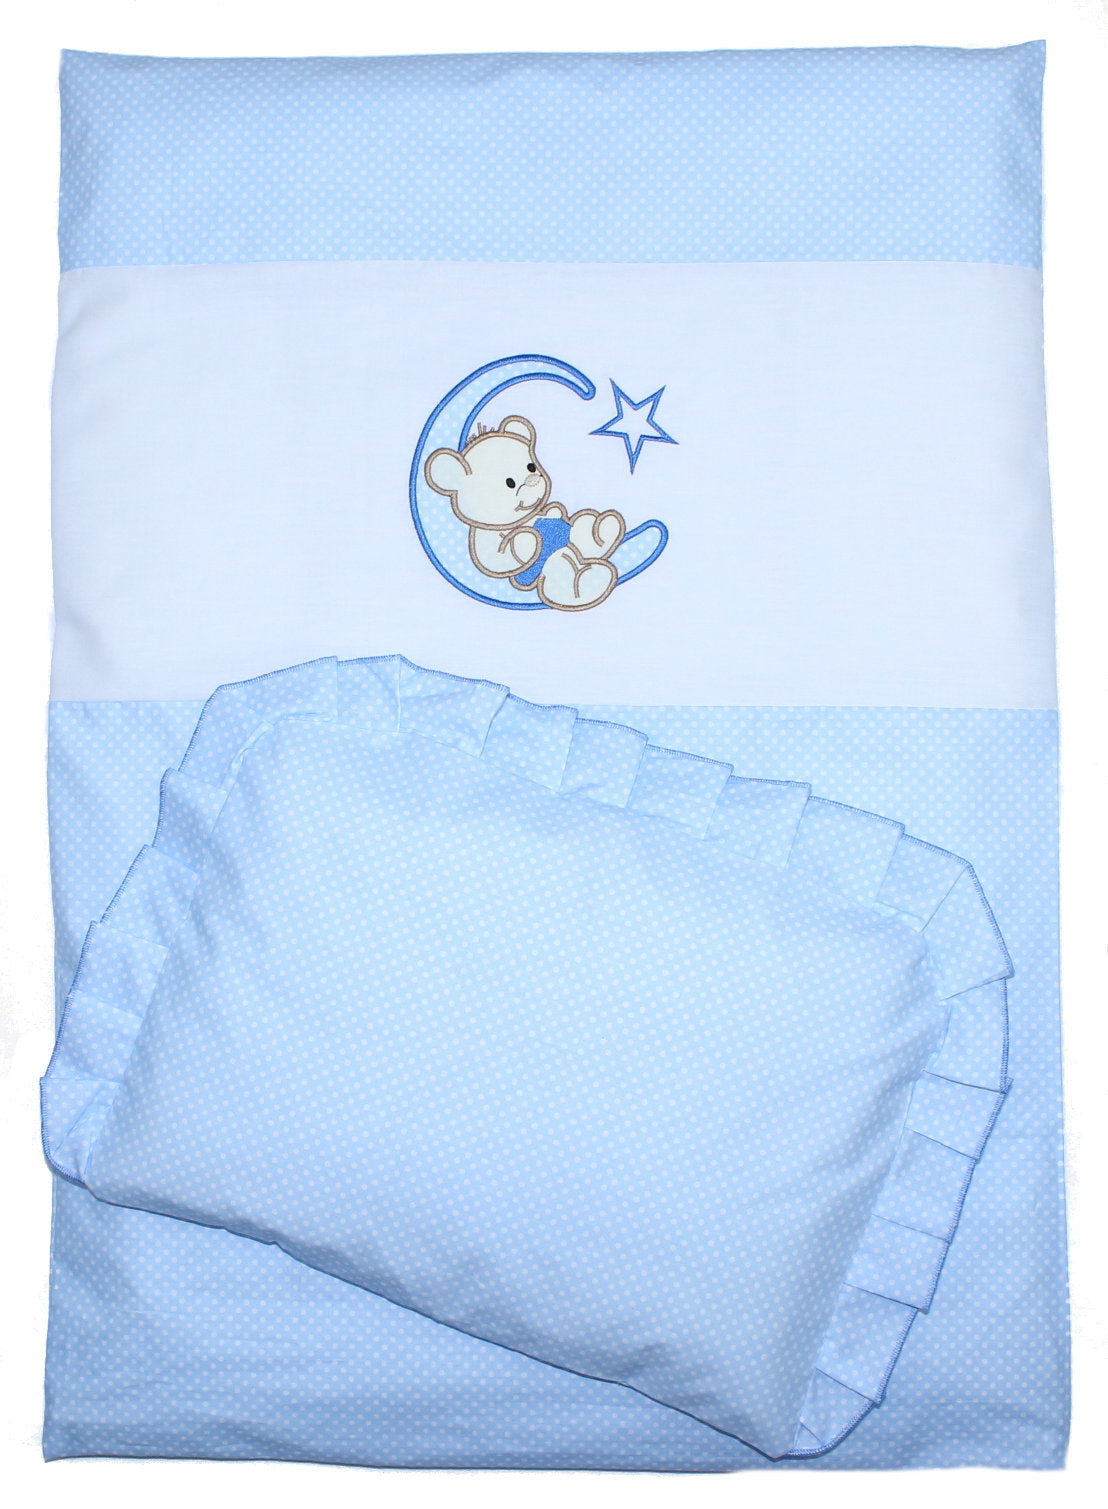 2- 4tlg Kinderwagenset - Bärchen Mond - Punkten Blau - Bettwäsche für Kinderwagen Bezüge Decke Kissen